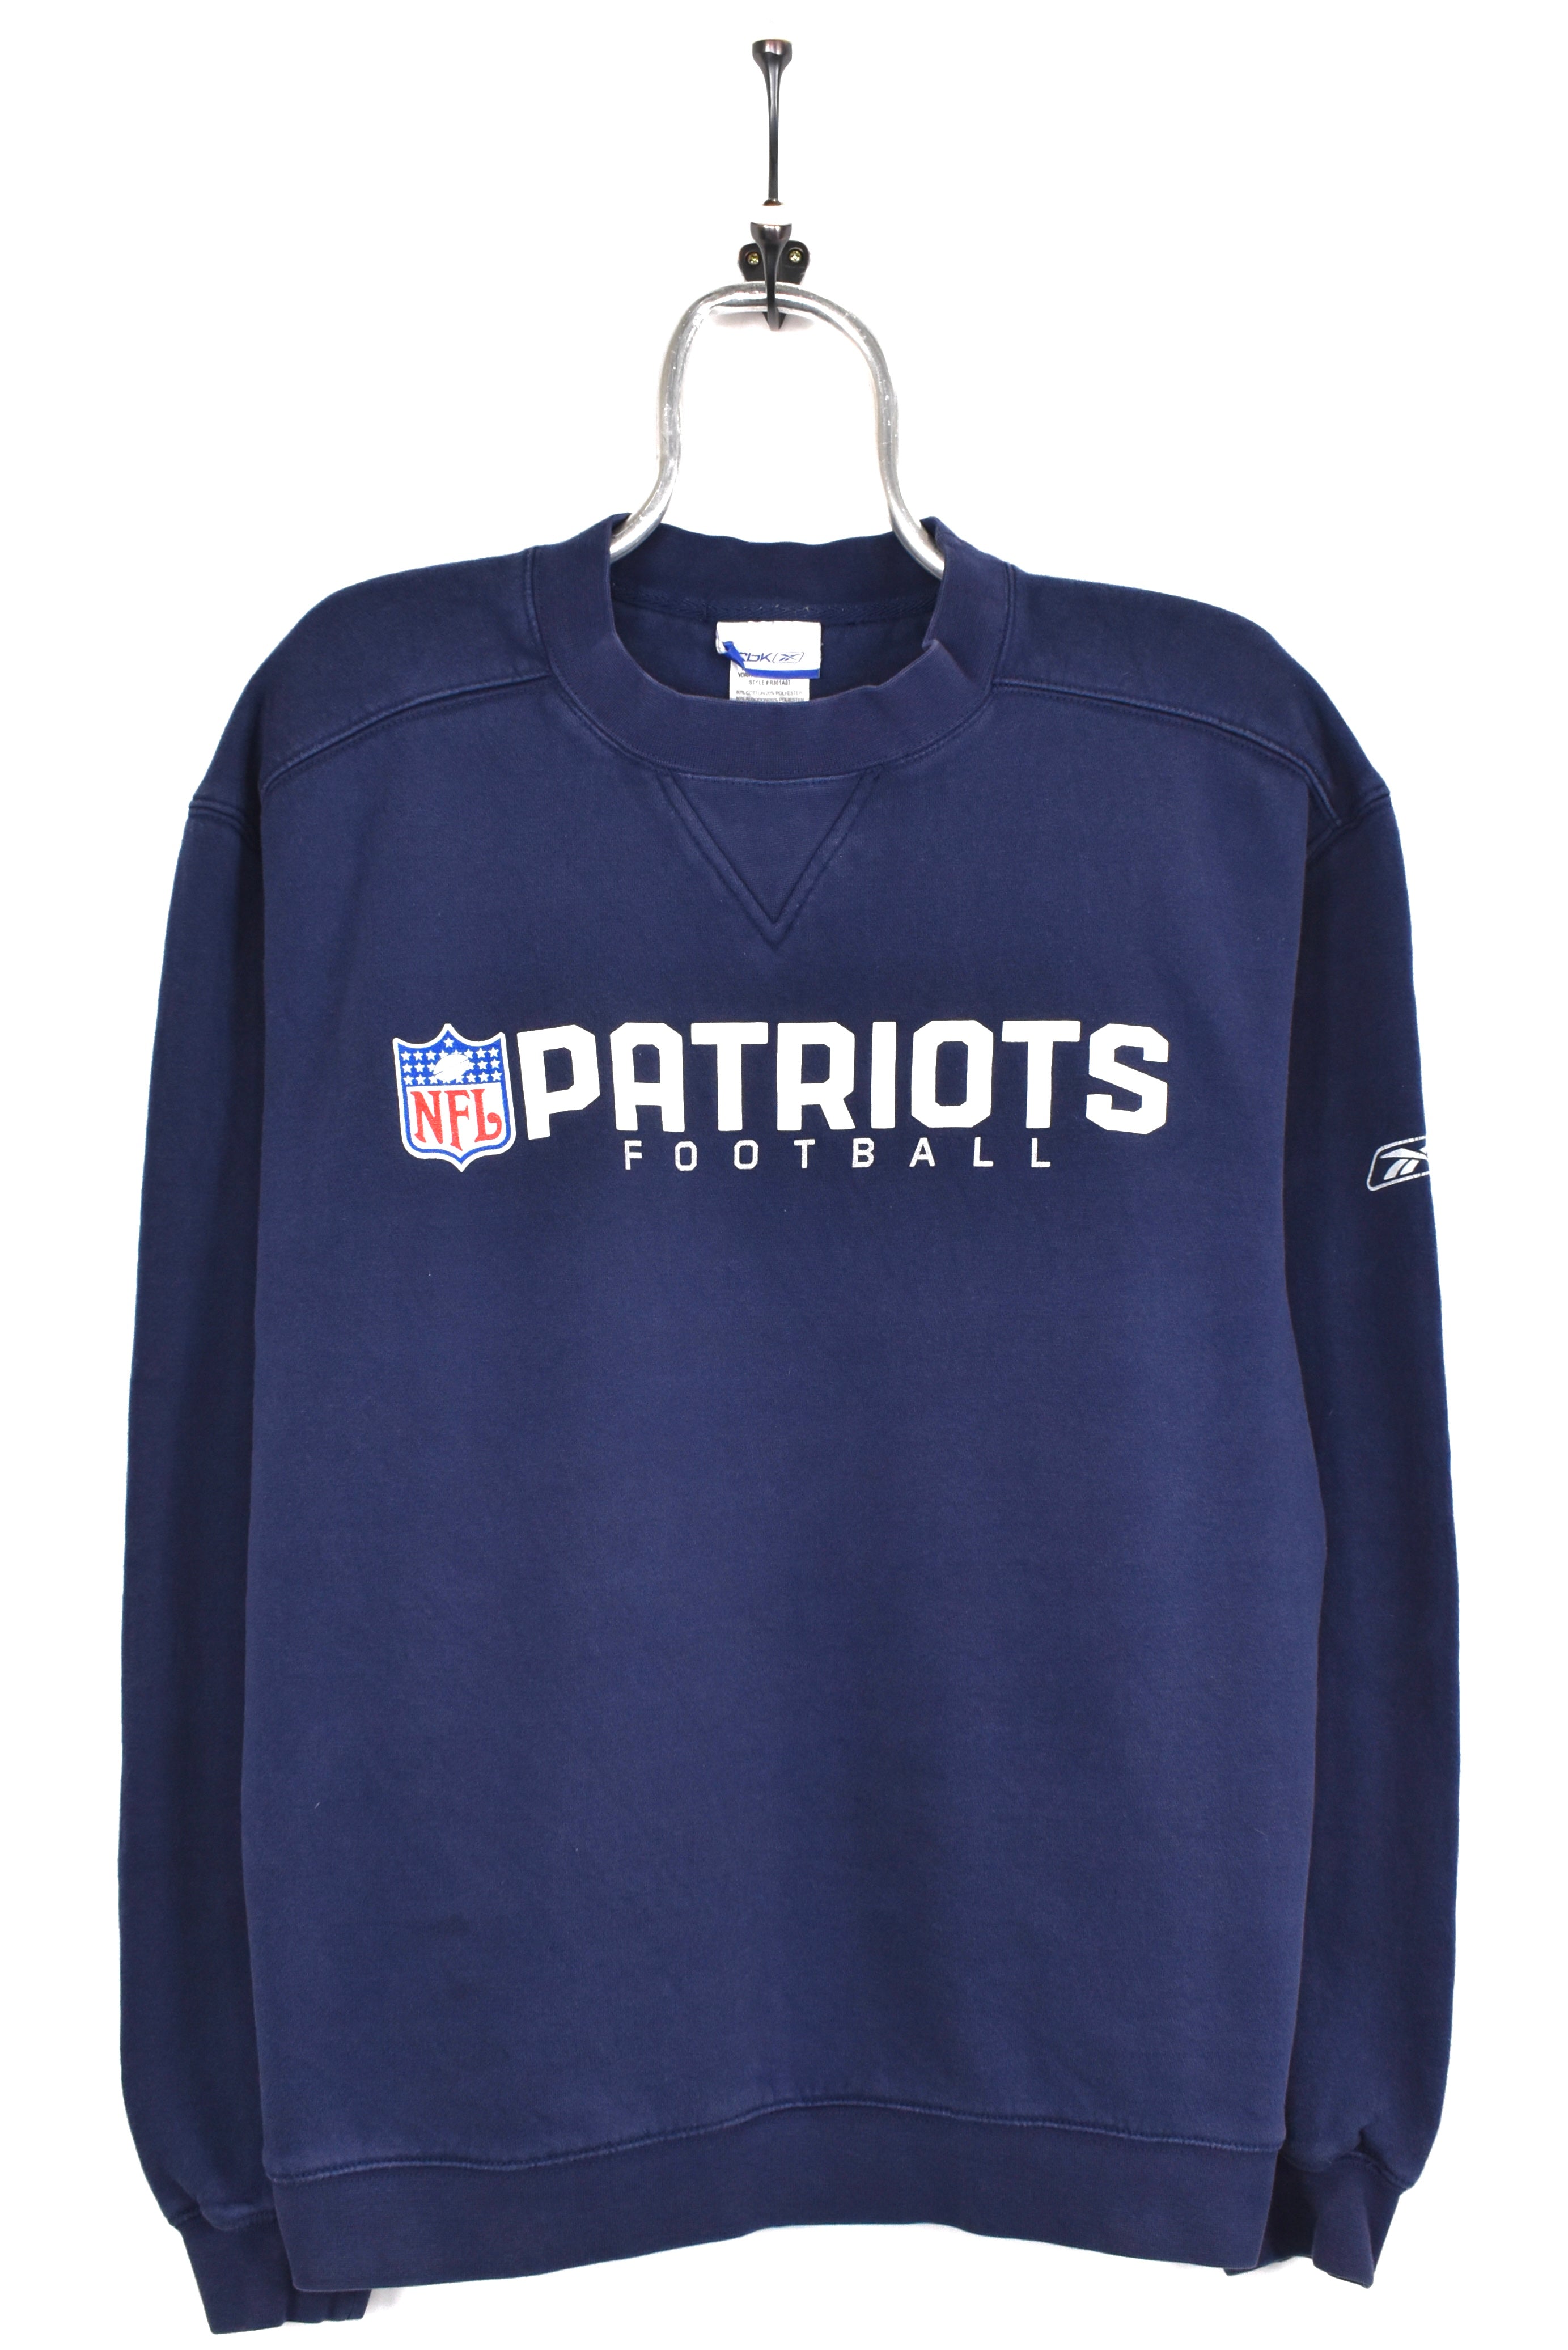 Vintage New England Patriots sweatshirt, blue NFL graphic crewneck - AU Large PRO SPORT